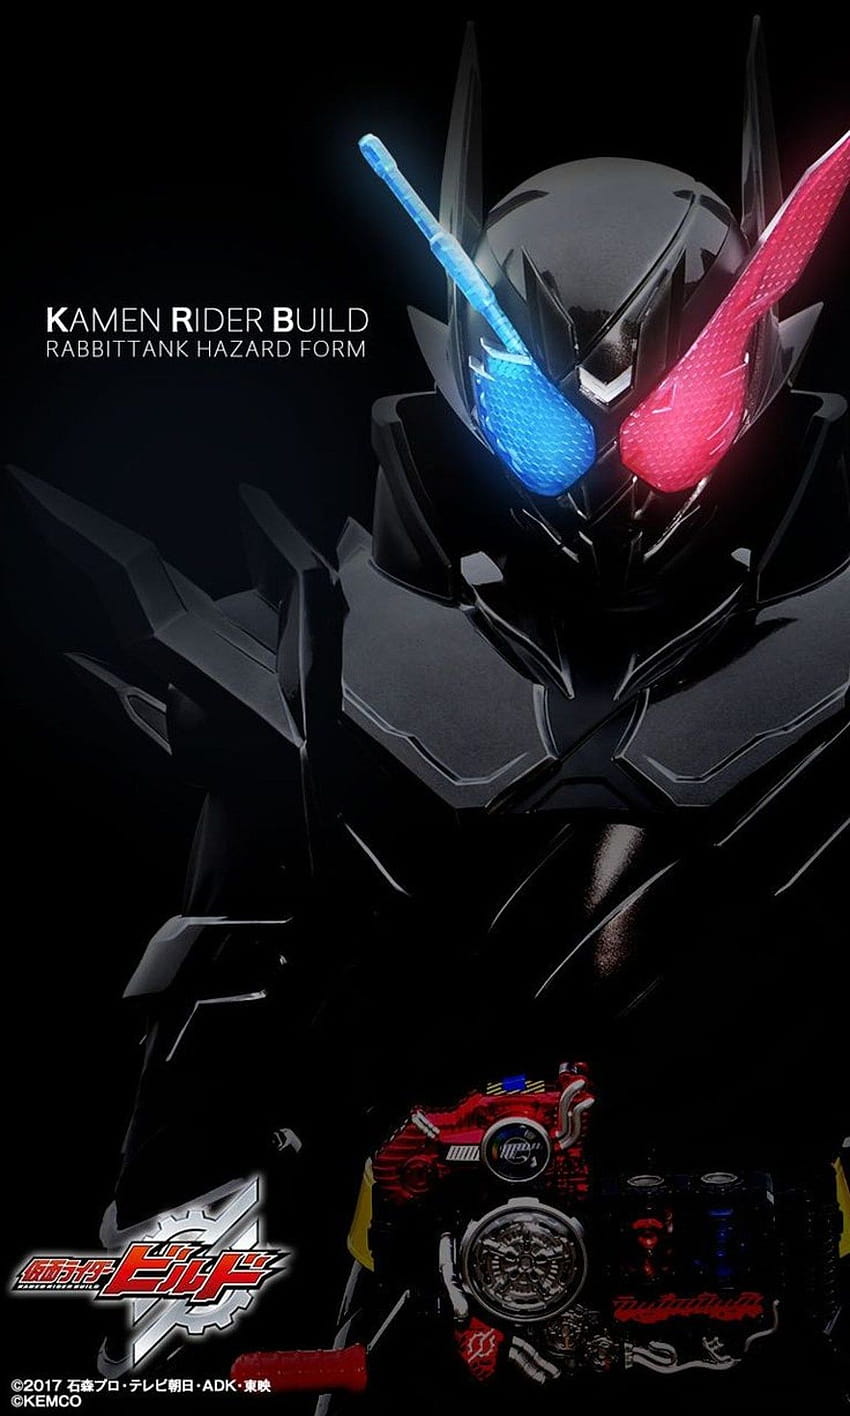 Kamen Rider Construir PC, kaizoku kamen rider fondo de pantalla del teléfono